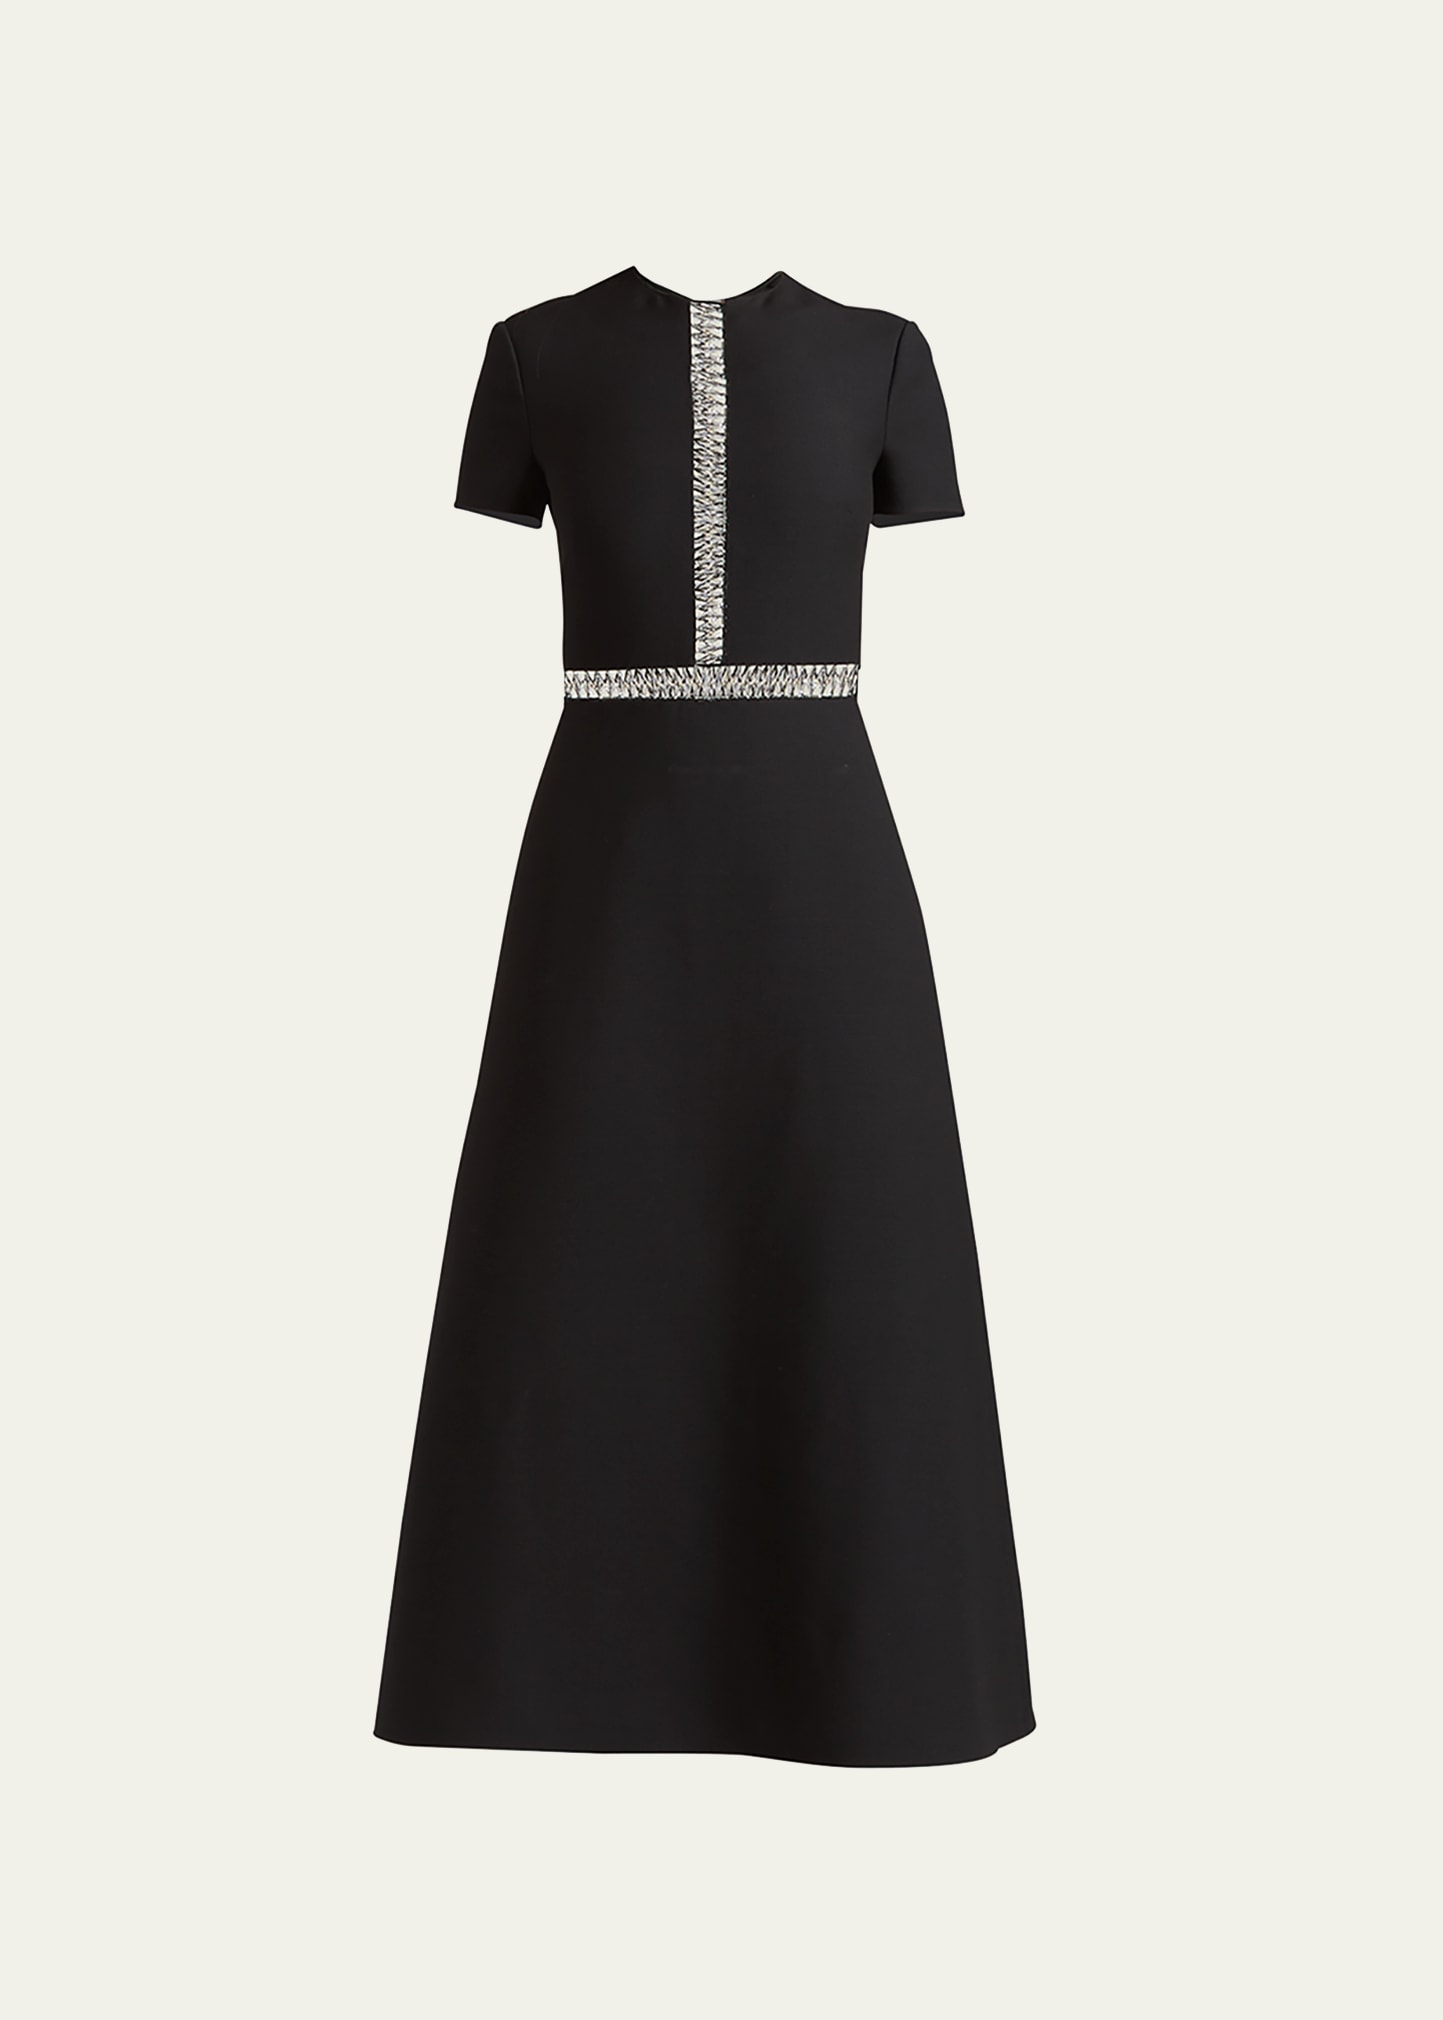 Valentino Garavani Metallic-Embroidered Crepe Couture Midi Dress